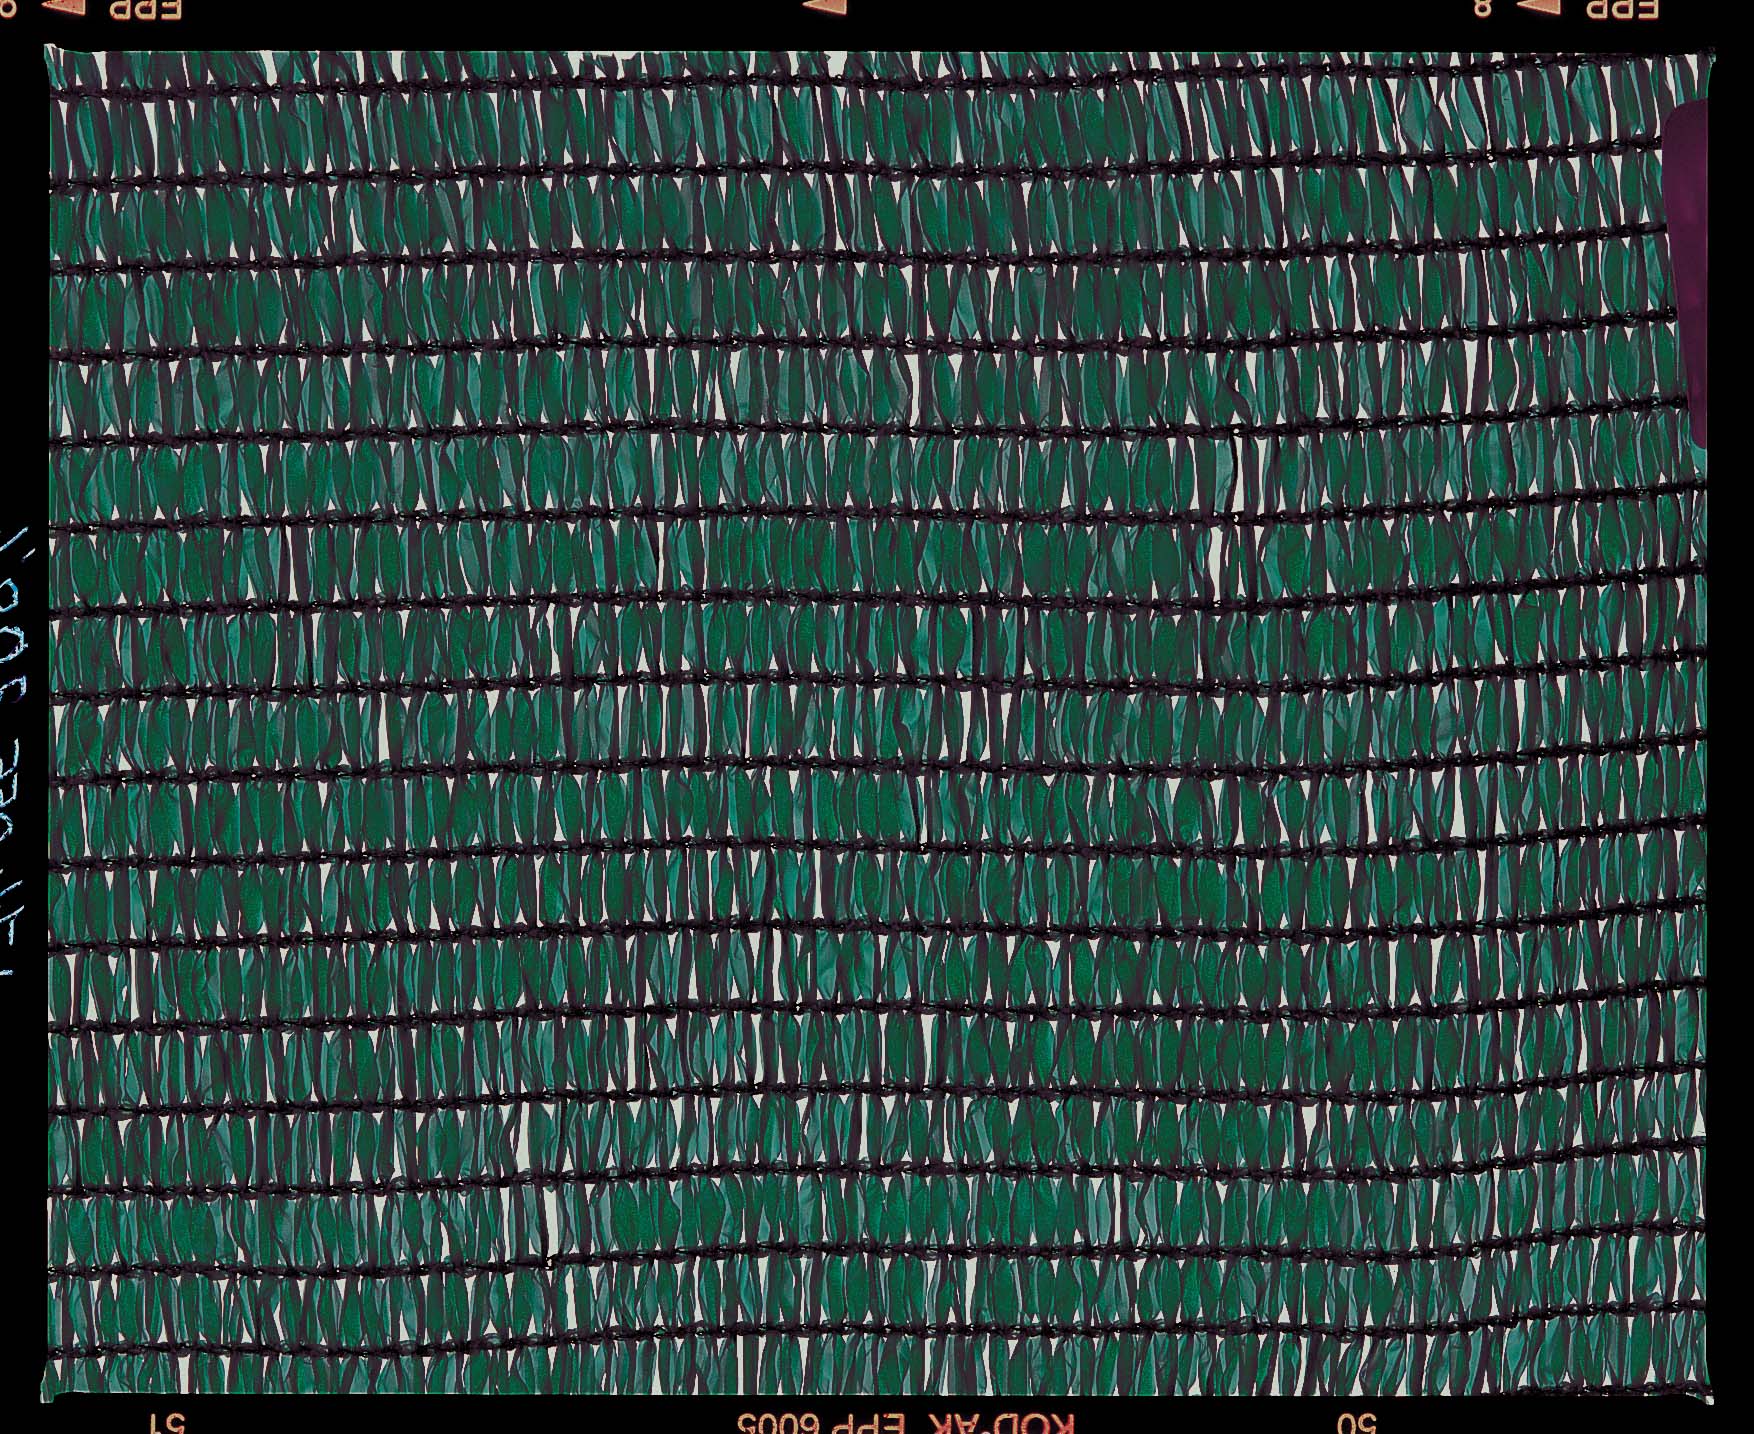 Tkaná tieniaca sieť s fixačnou slučkou Texanet 2x10 m